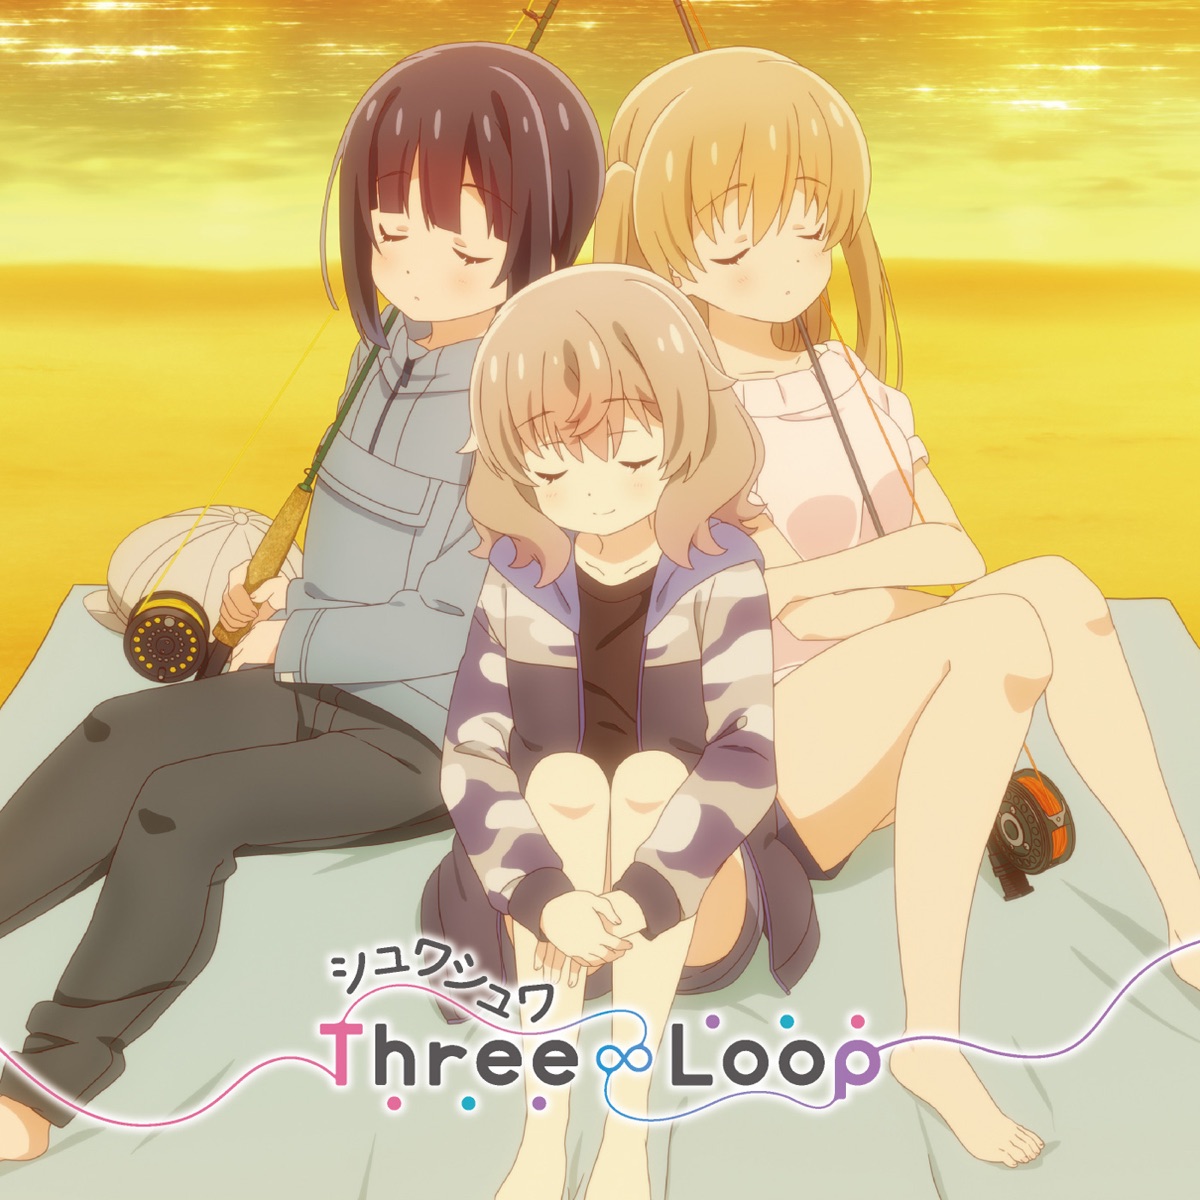 『Three∞Loop - シュワシュワ』収録の『シュワシュワ』ジャケット